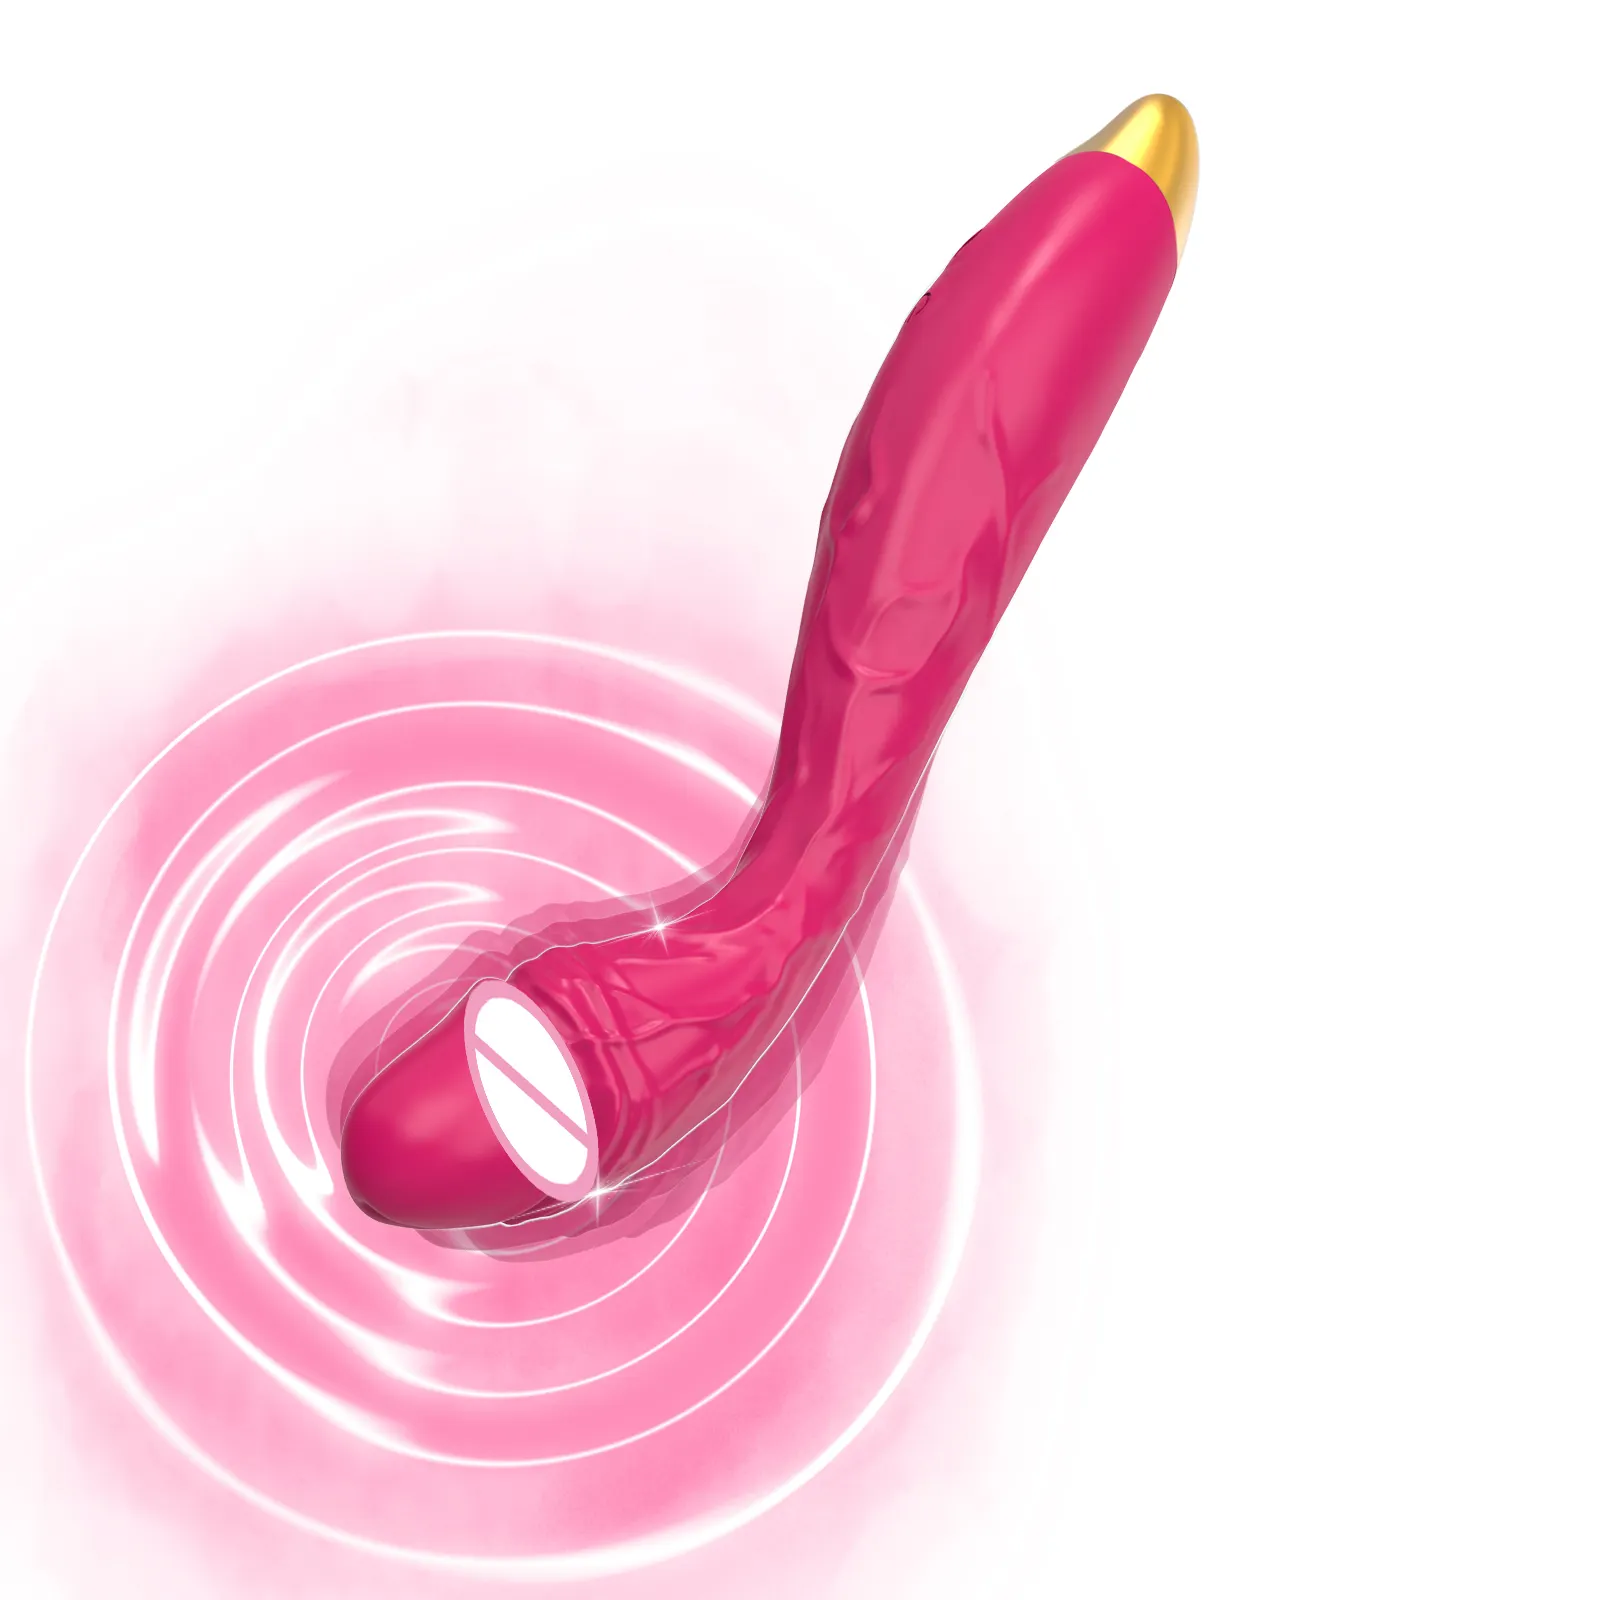 قضيب اصطناعي هزّاز للنساء، لعبة جنسية مع 10 أوضاع وضع اهتزاز قوي، ألعاب جنسية هزّازة لتحفيز حلمات البظر